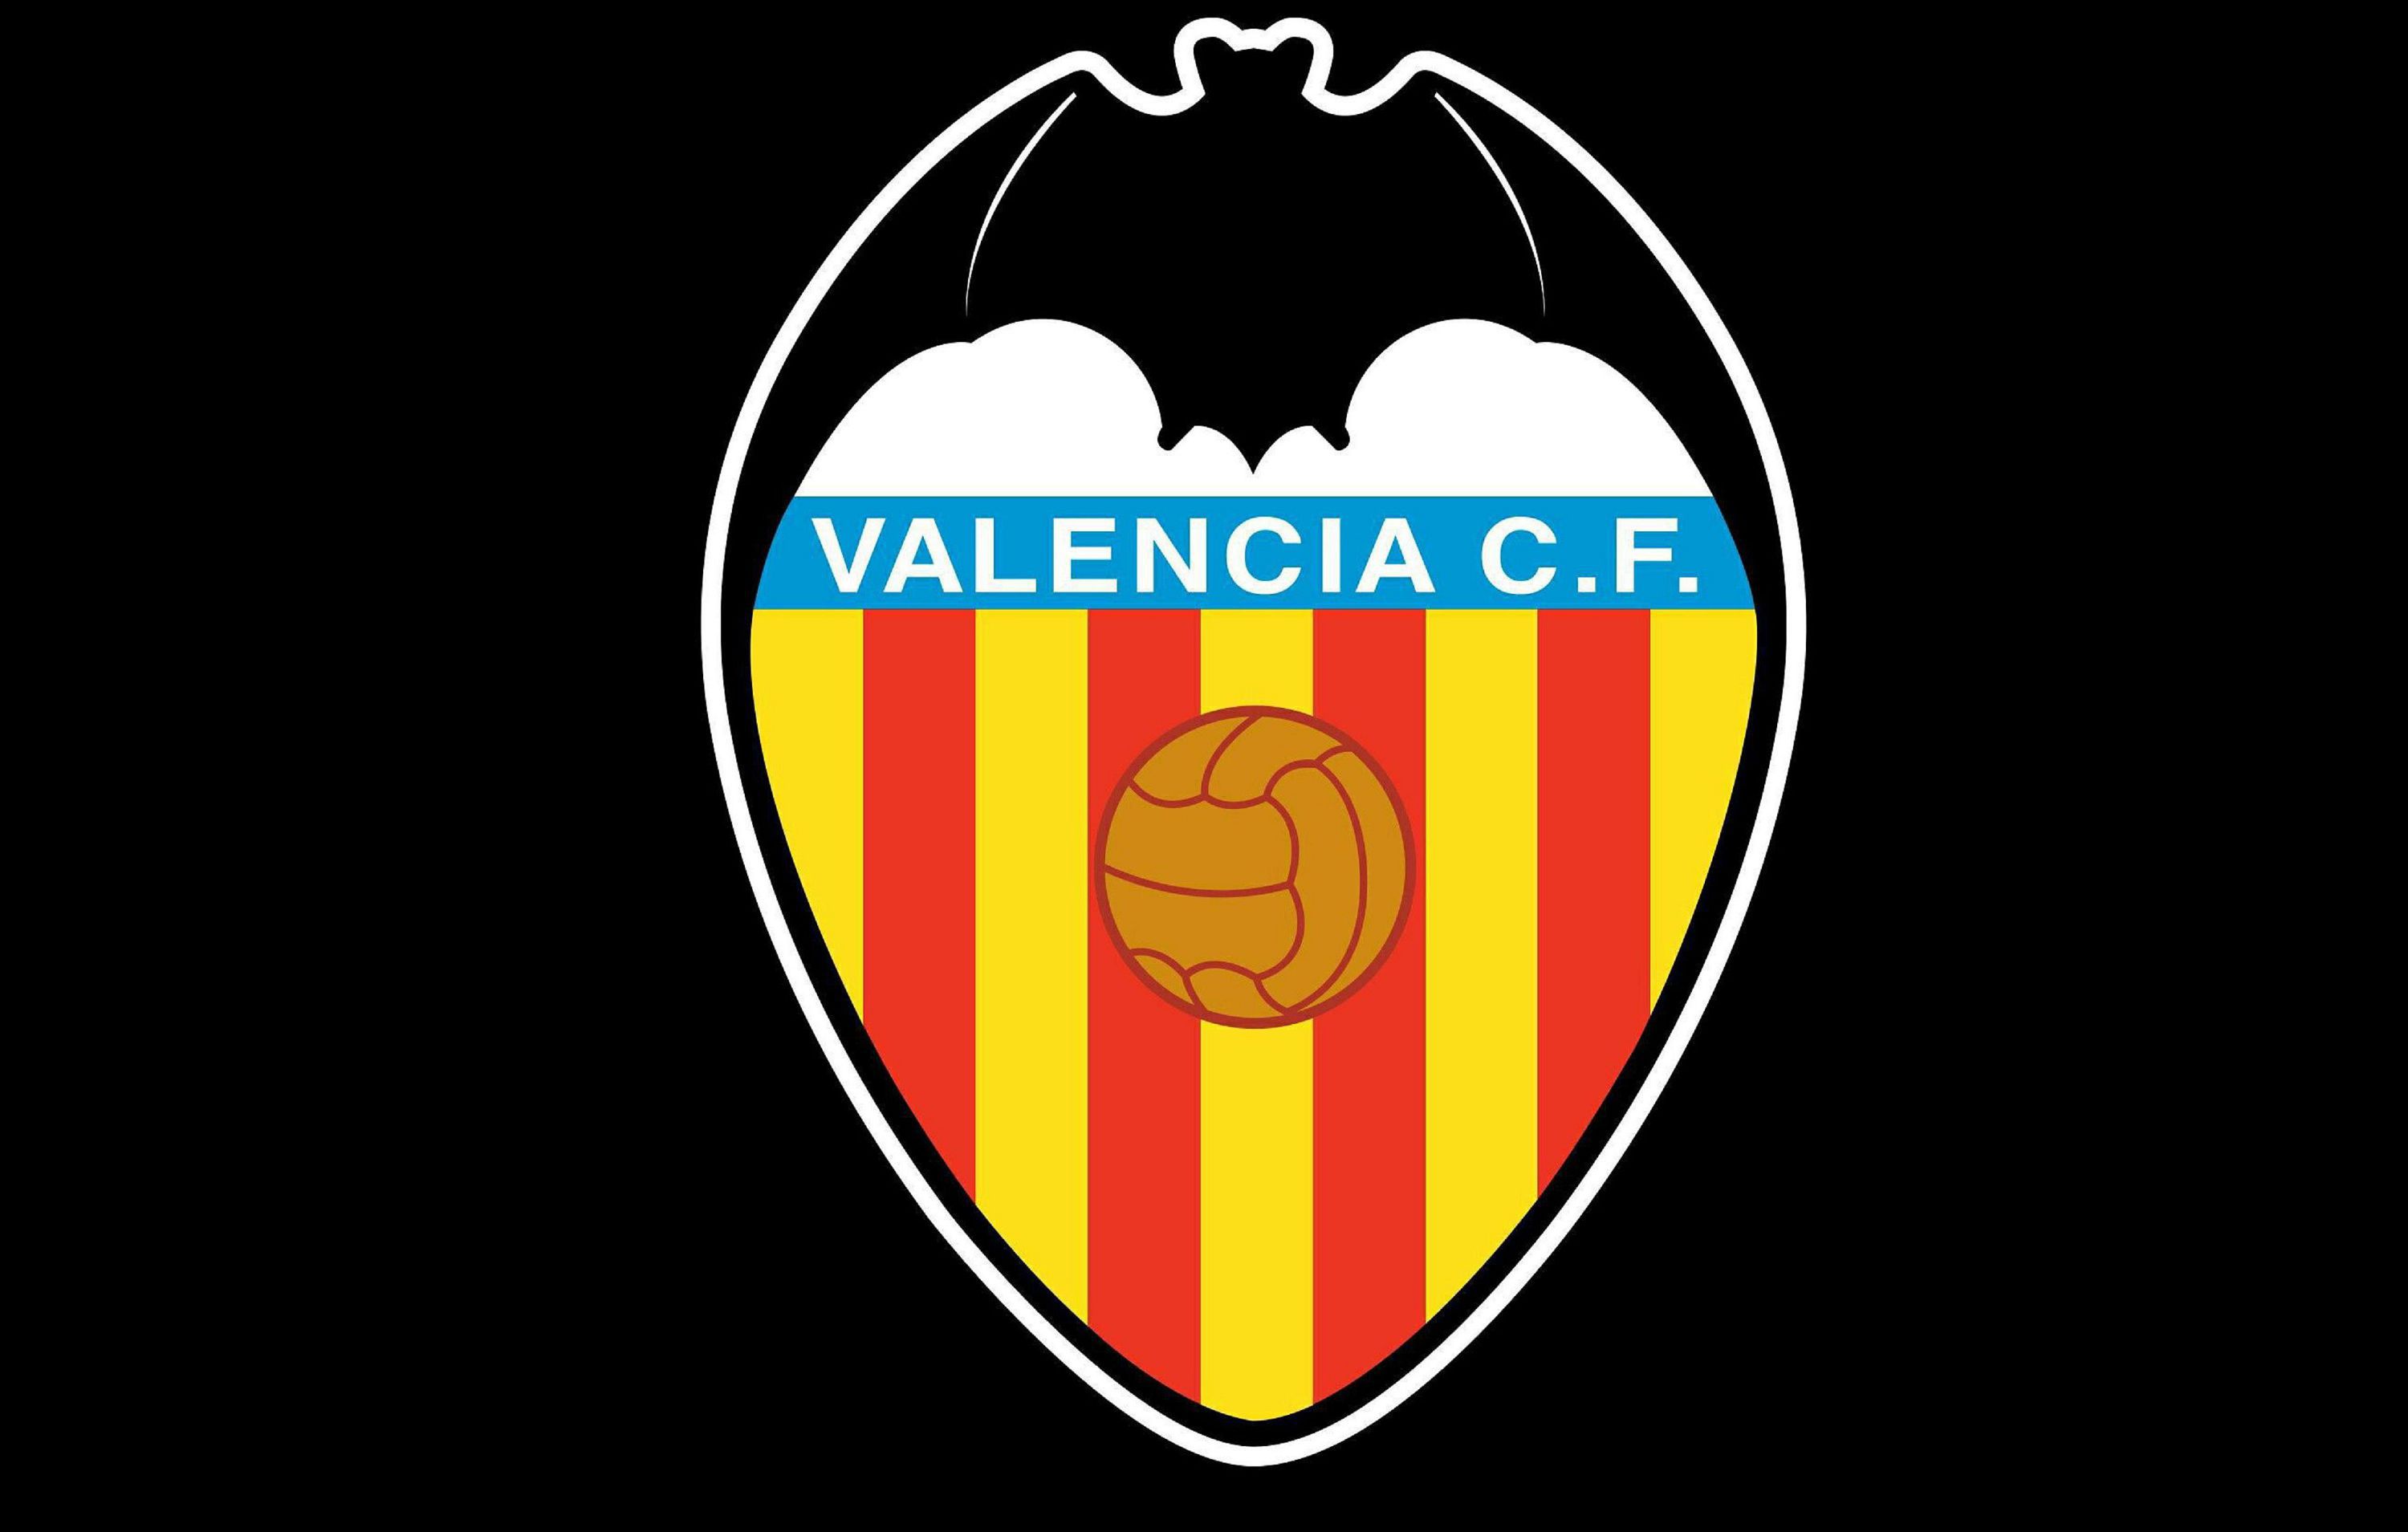 Valencia Cf fondos de pantalla de alta definición fondos de pantalla gratis